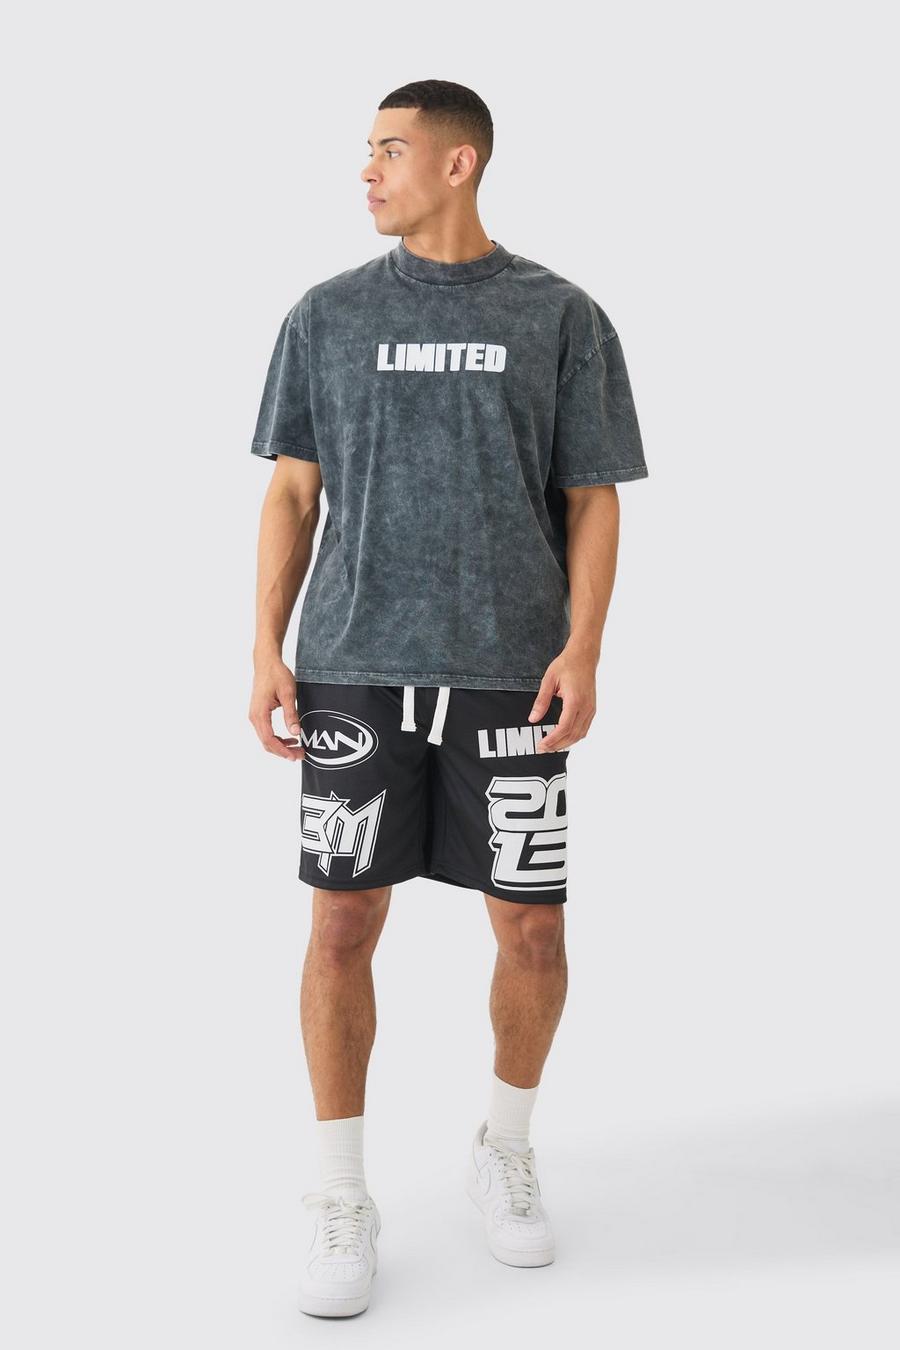 Pantalón corto de baloncesto de malla y camiseta oversize con lavado de ácido Limited, Black